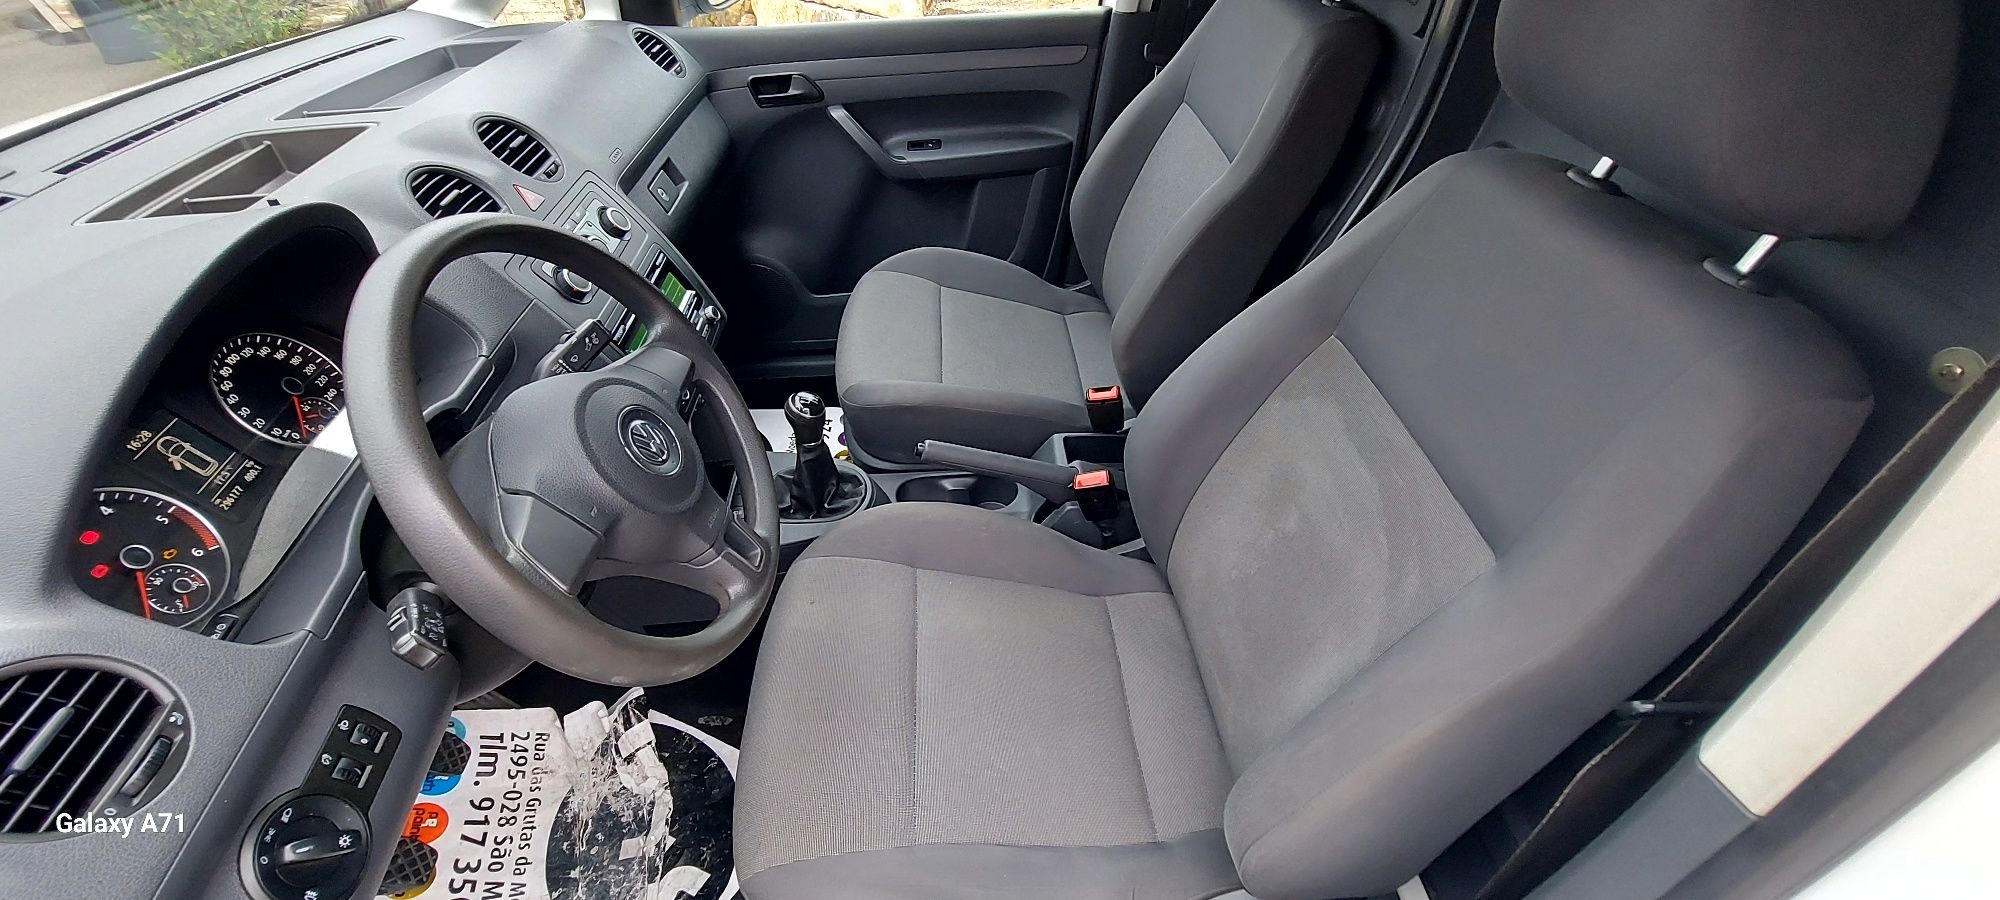 VW Caddy 2.0 TDI 4x4 4Motion Ano 2014